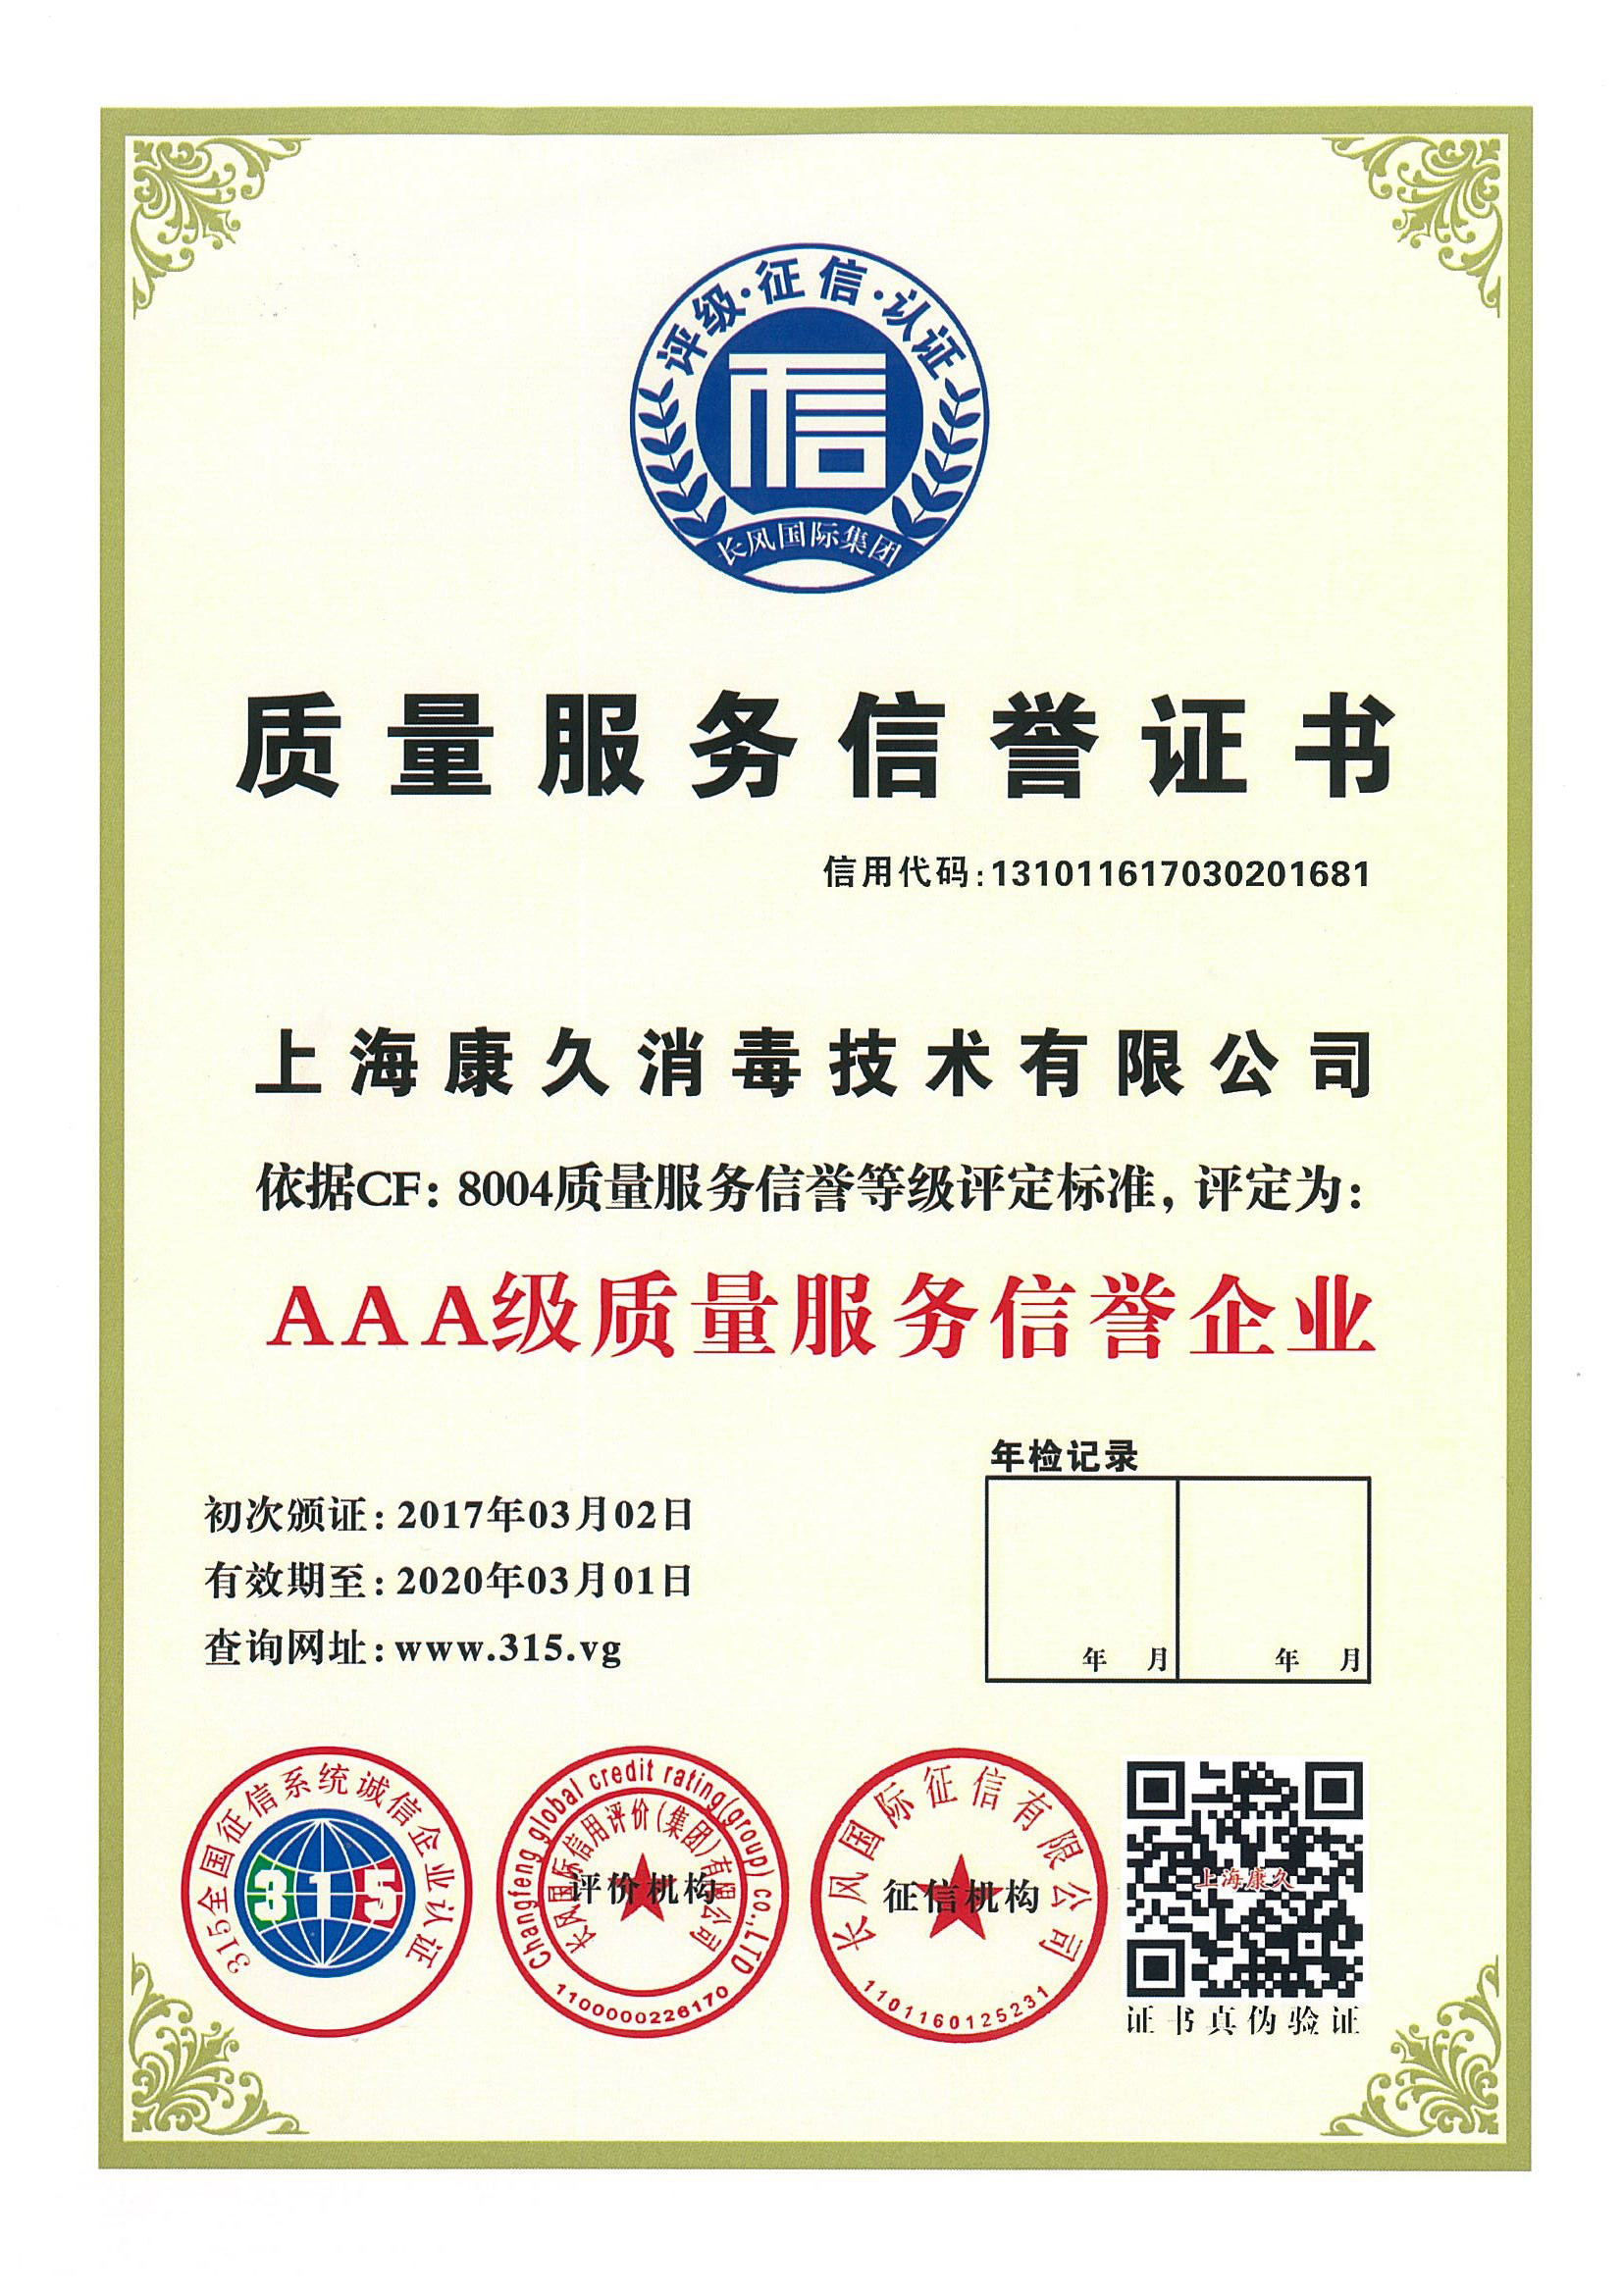 “沧州质量服务信誉证书